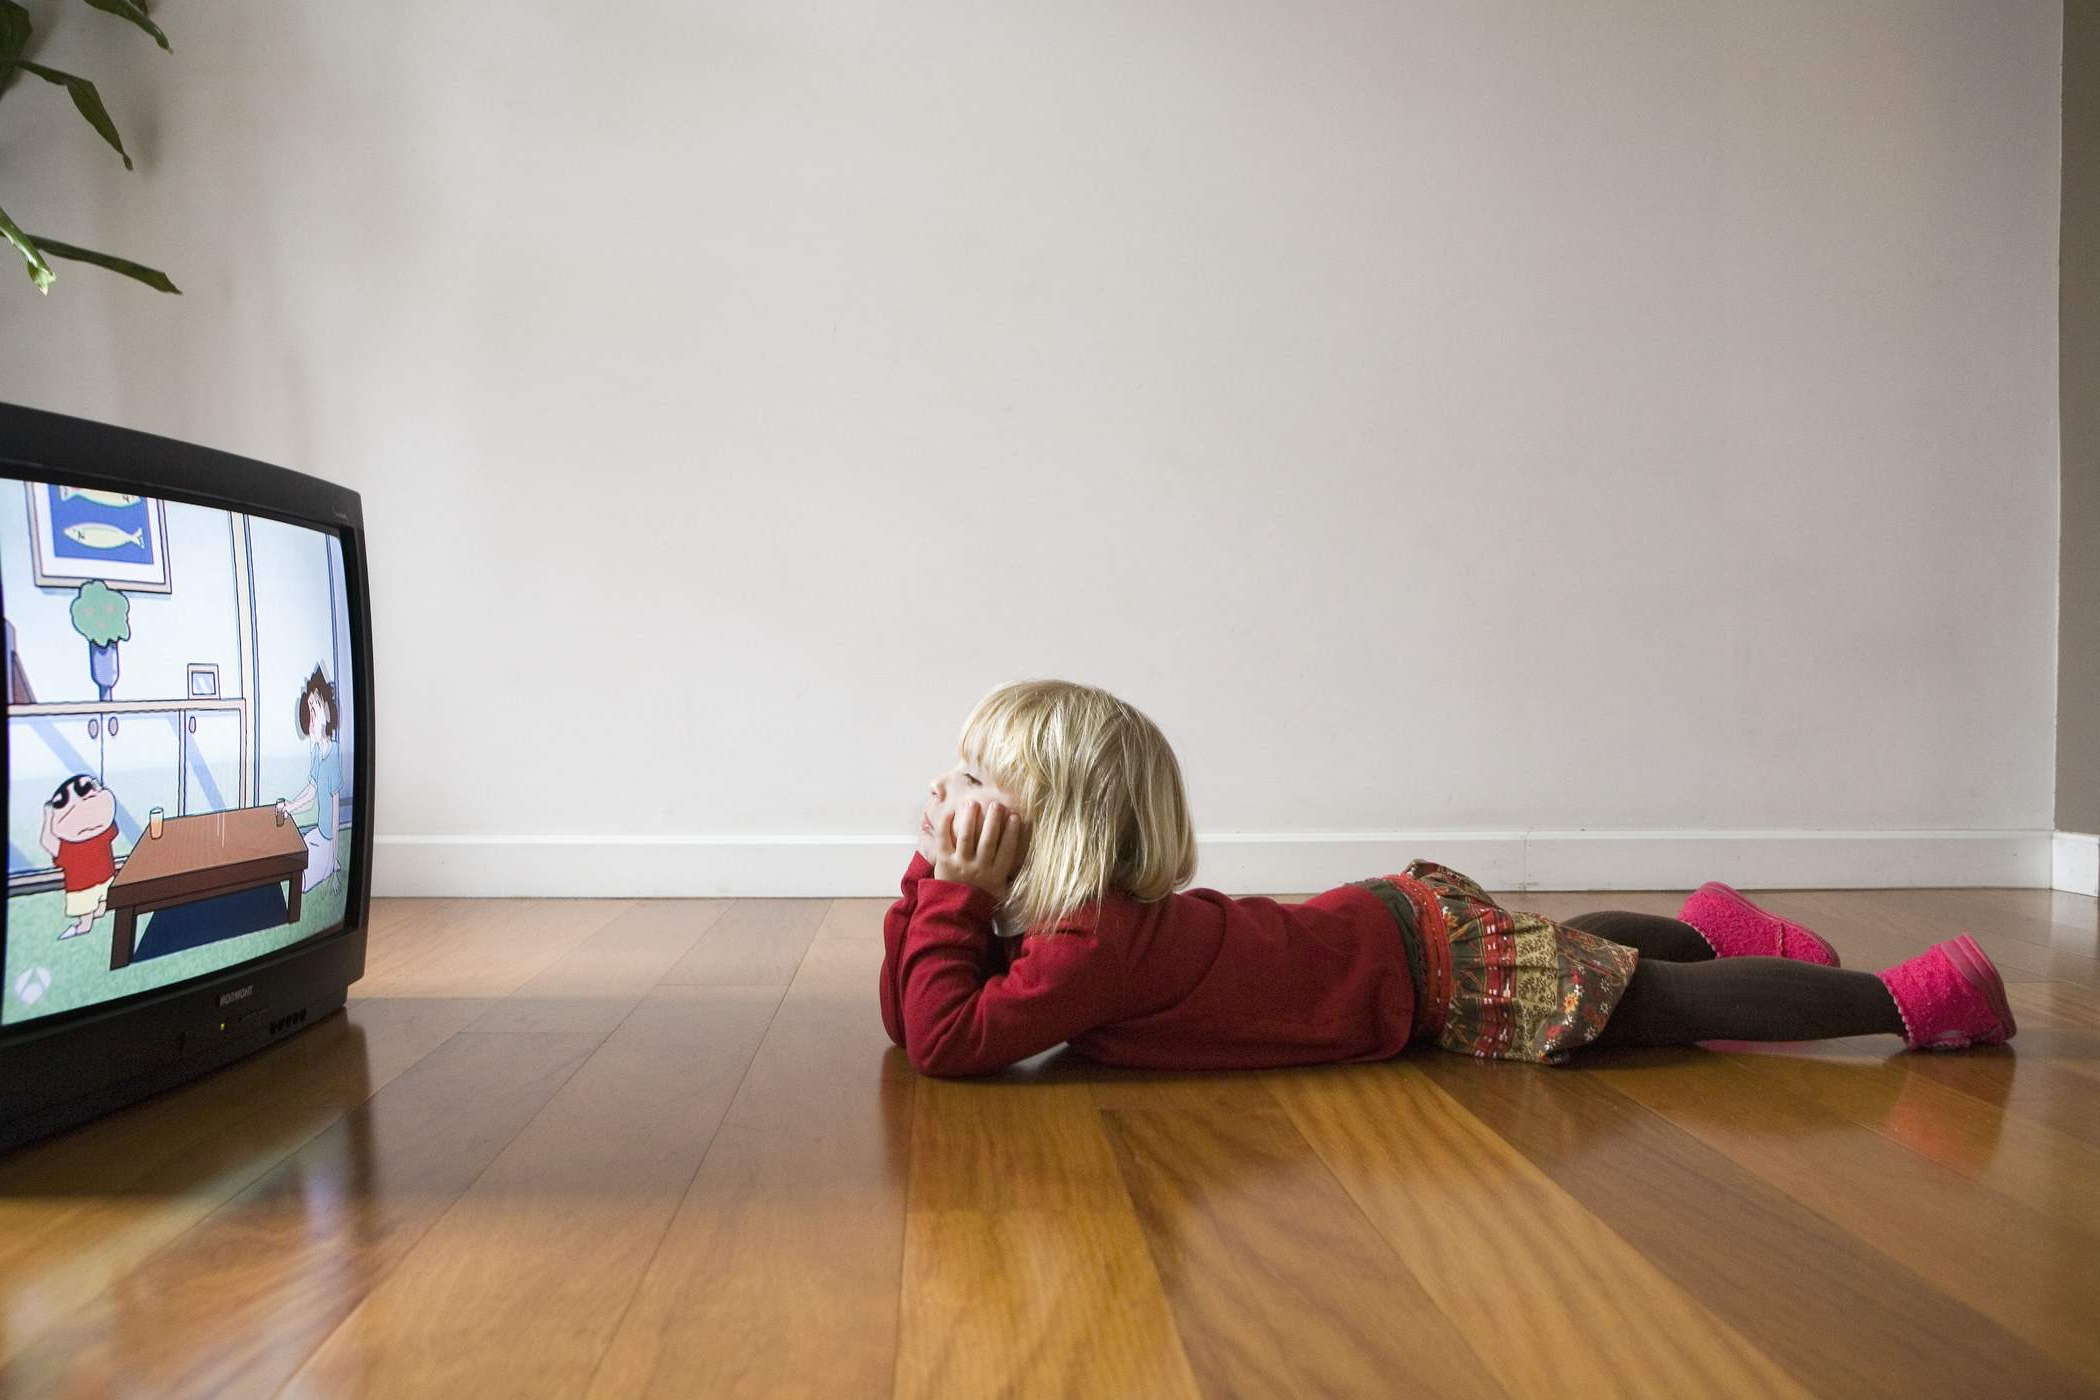 Переутомление глаз ребенка от просмотра телевизионных передач на близком расстоянии